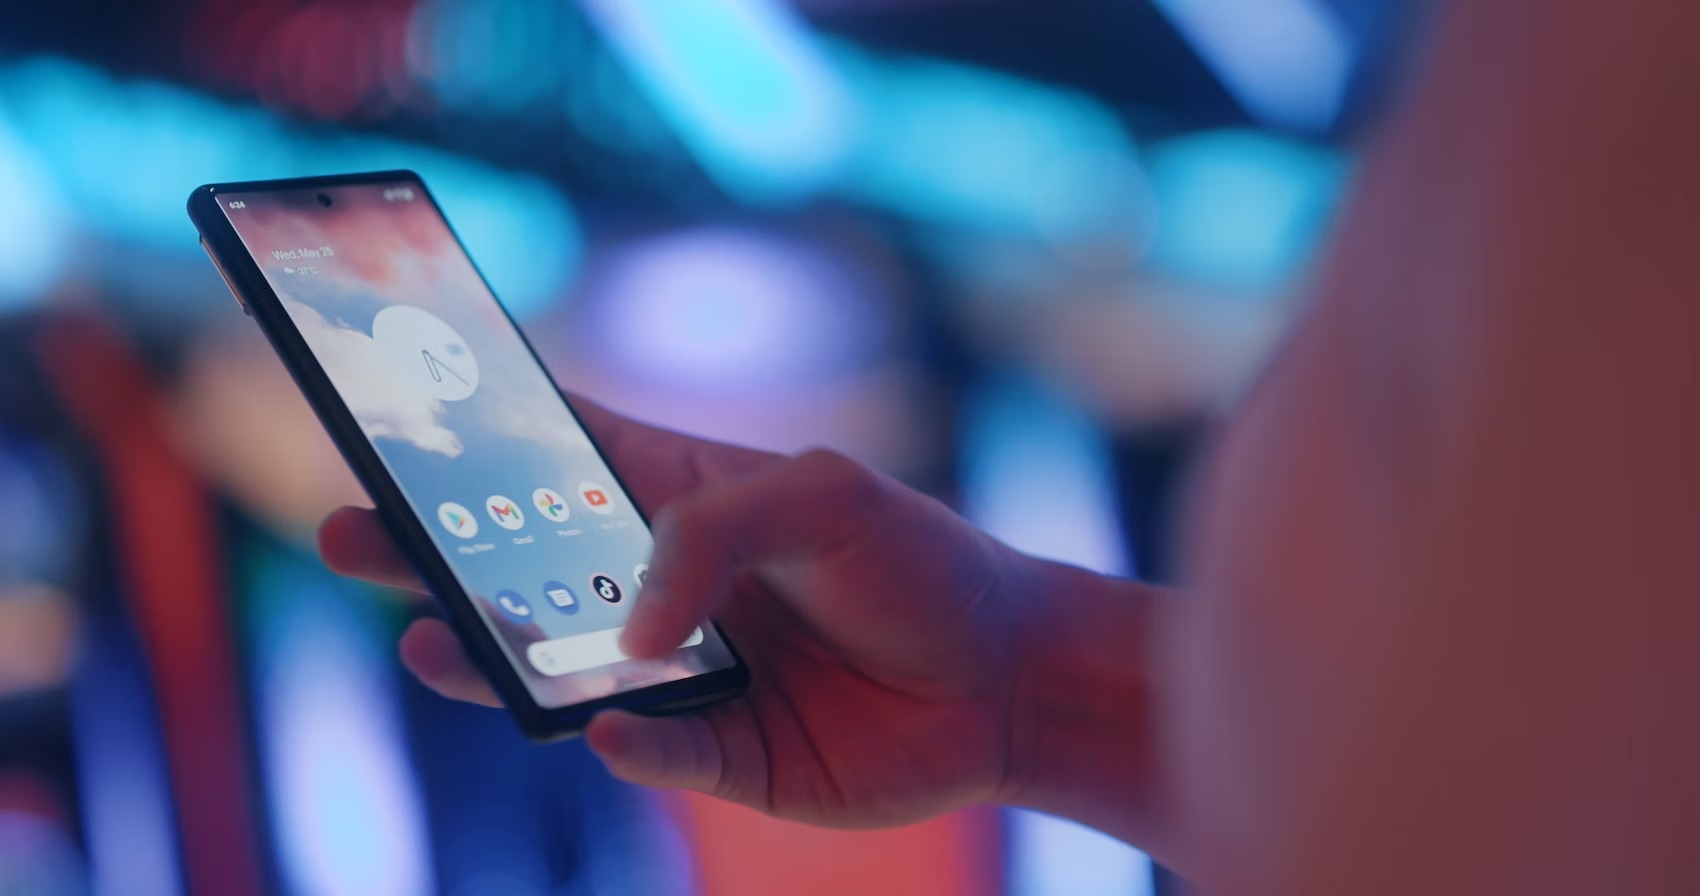 Google нашла десятки уязвимостей в модемах Samsung — для защиты на смартфонах Pixel, Samsung и Vivo нужно отключить некоторые функции